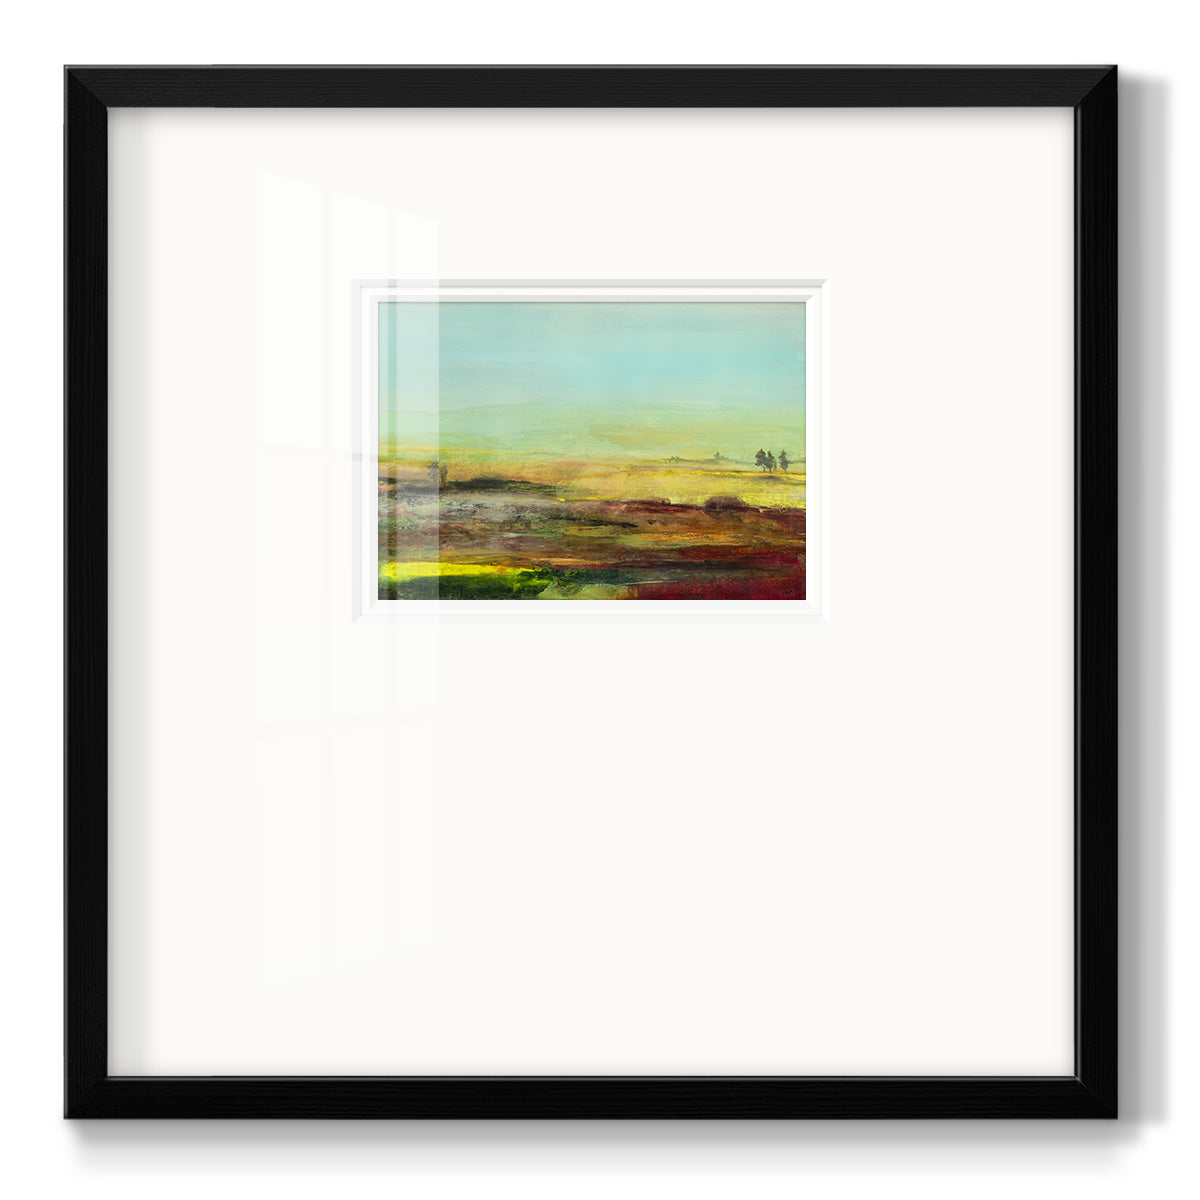 Ethereal Landscape I Premium Framed Print Double Matboard